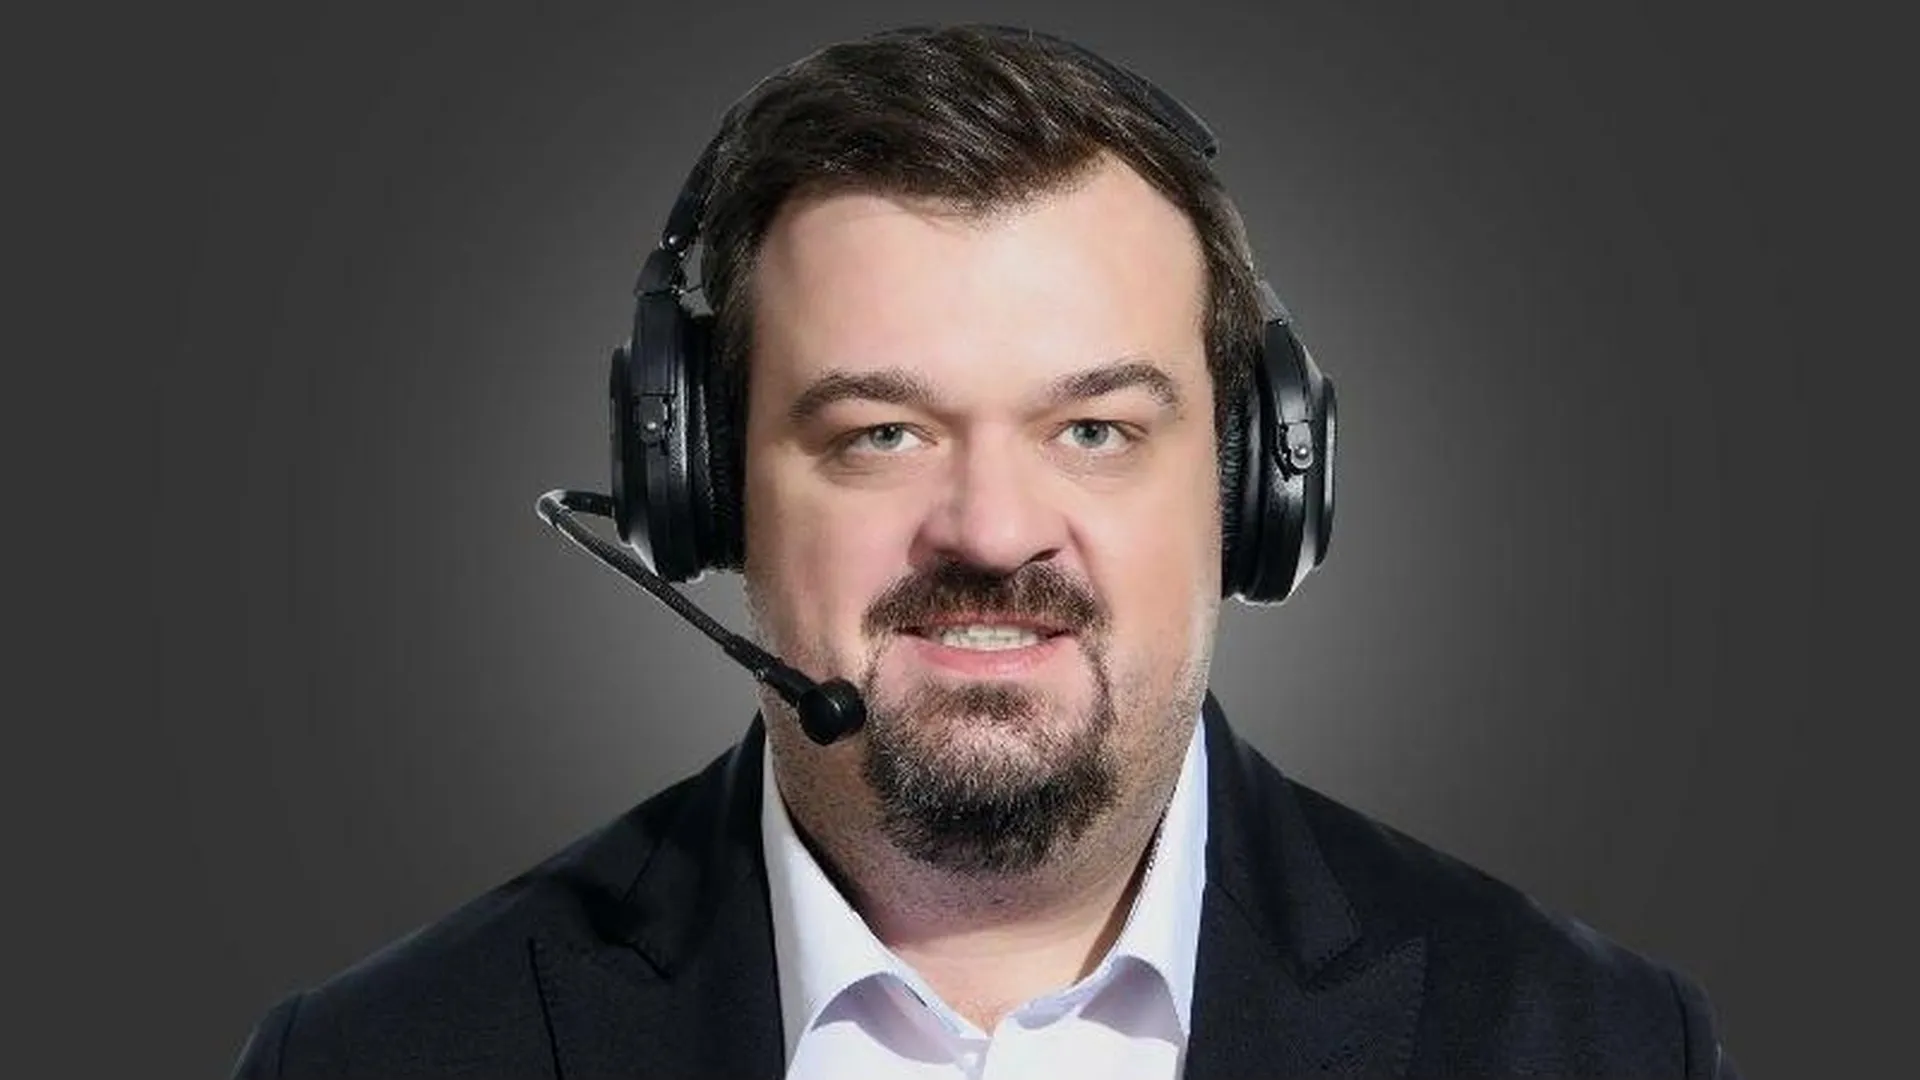 Василий Уткин: искрометный комментатор, медийный скандалист и одинокий человек